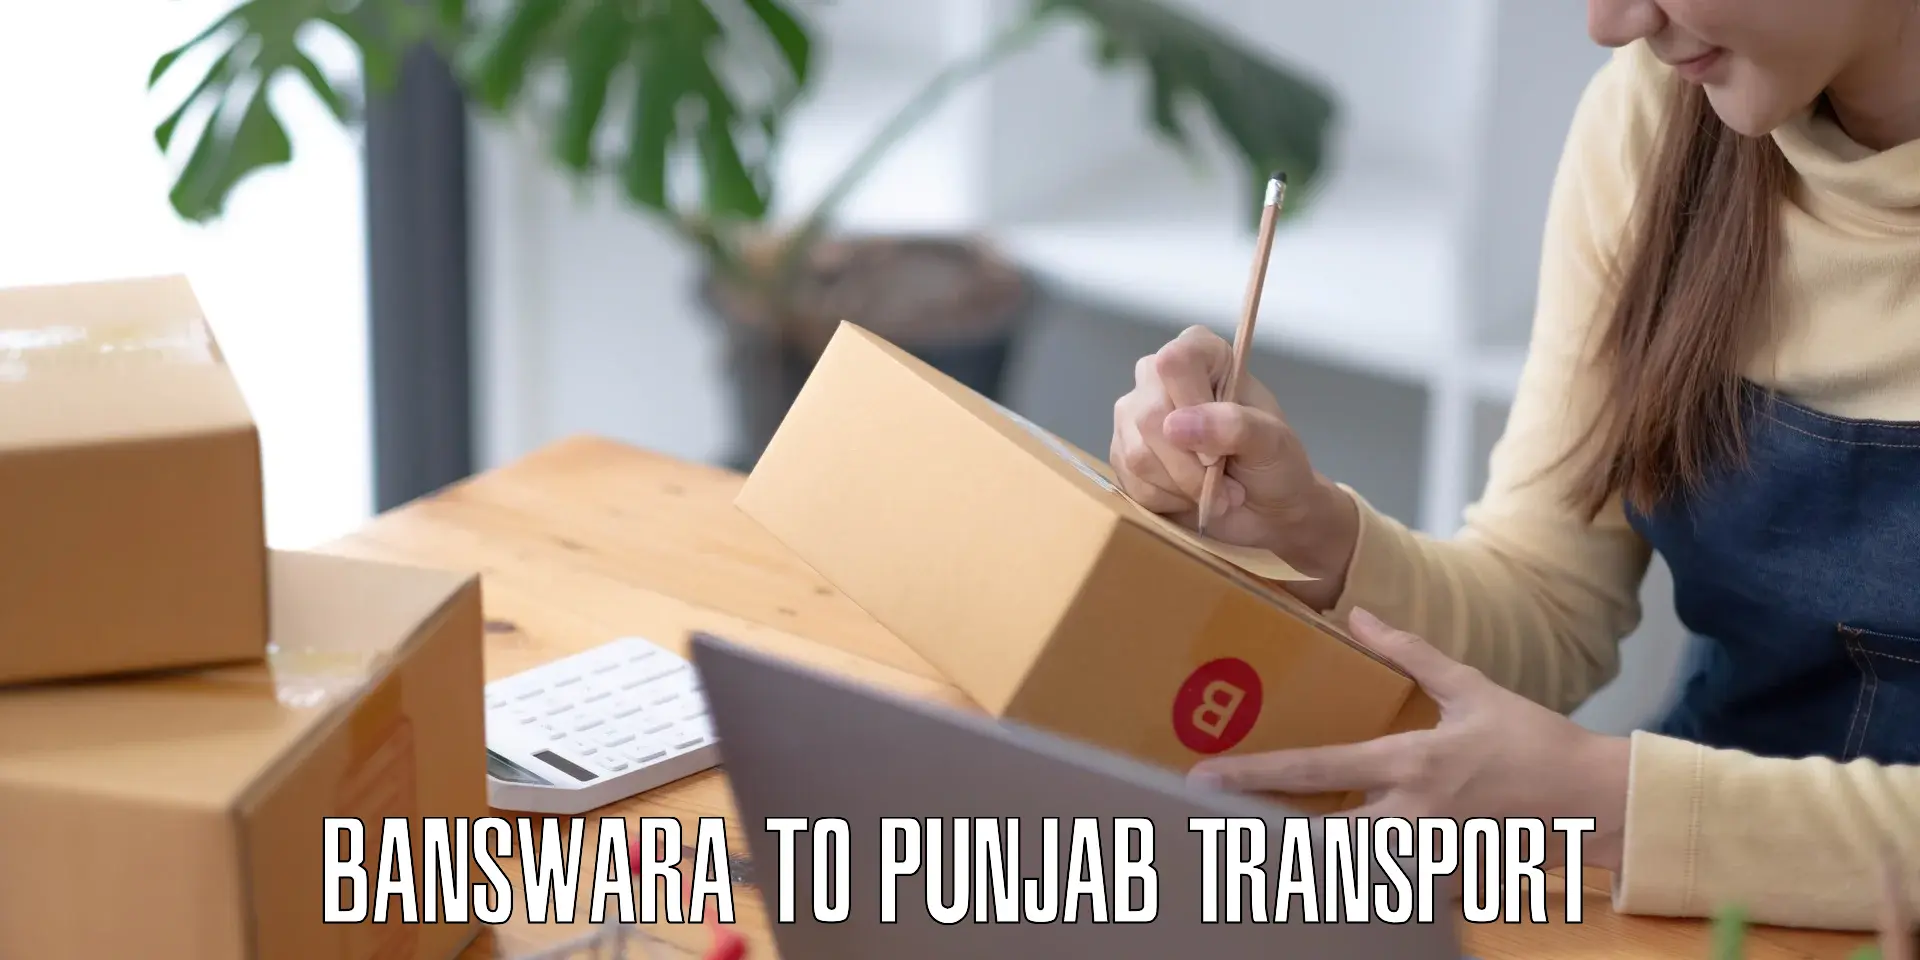 Container transport service Banswara to Punjab